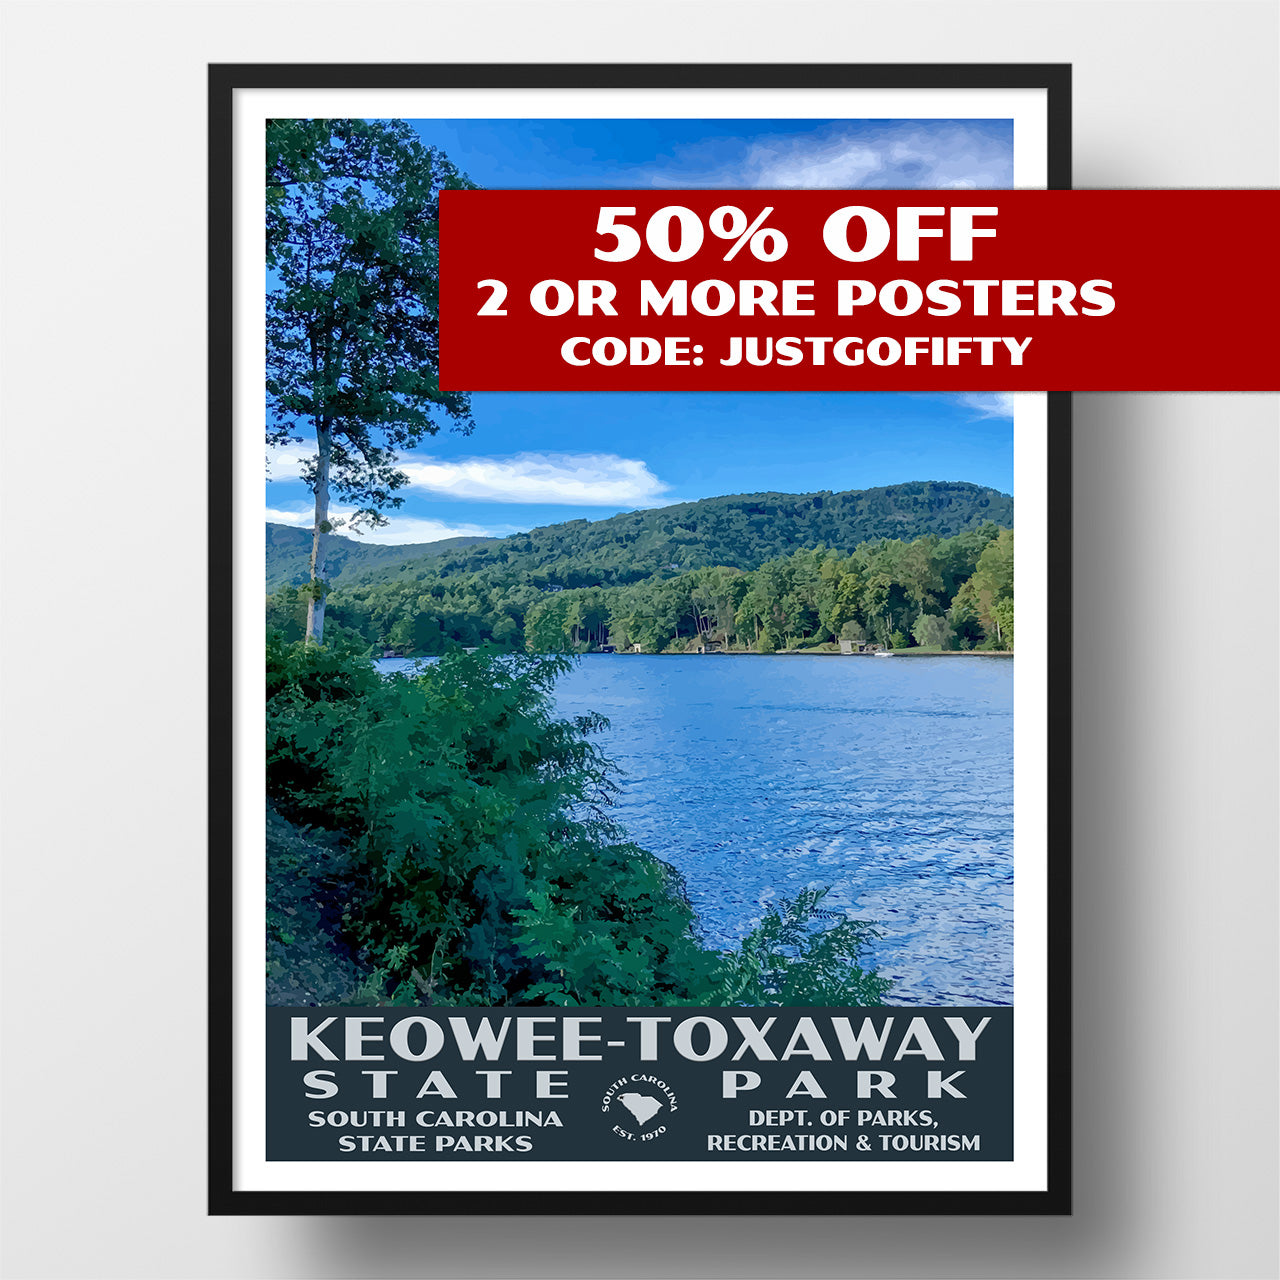 Keowee-Toxaway State Park poster